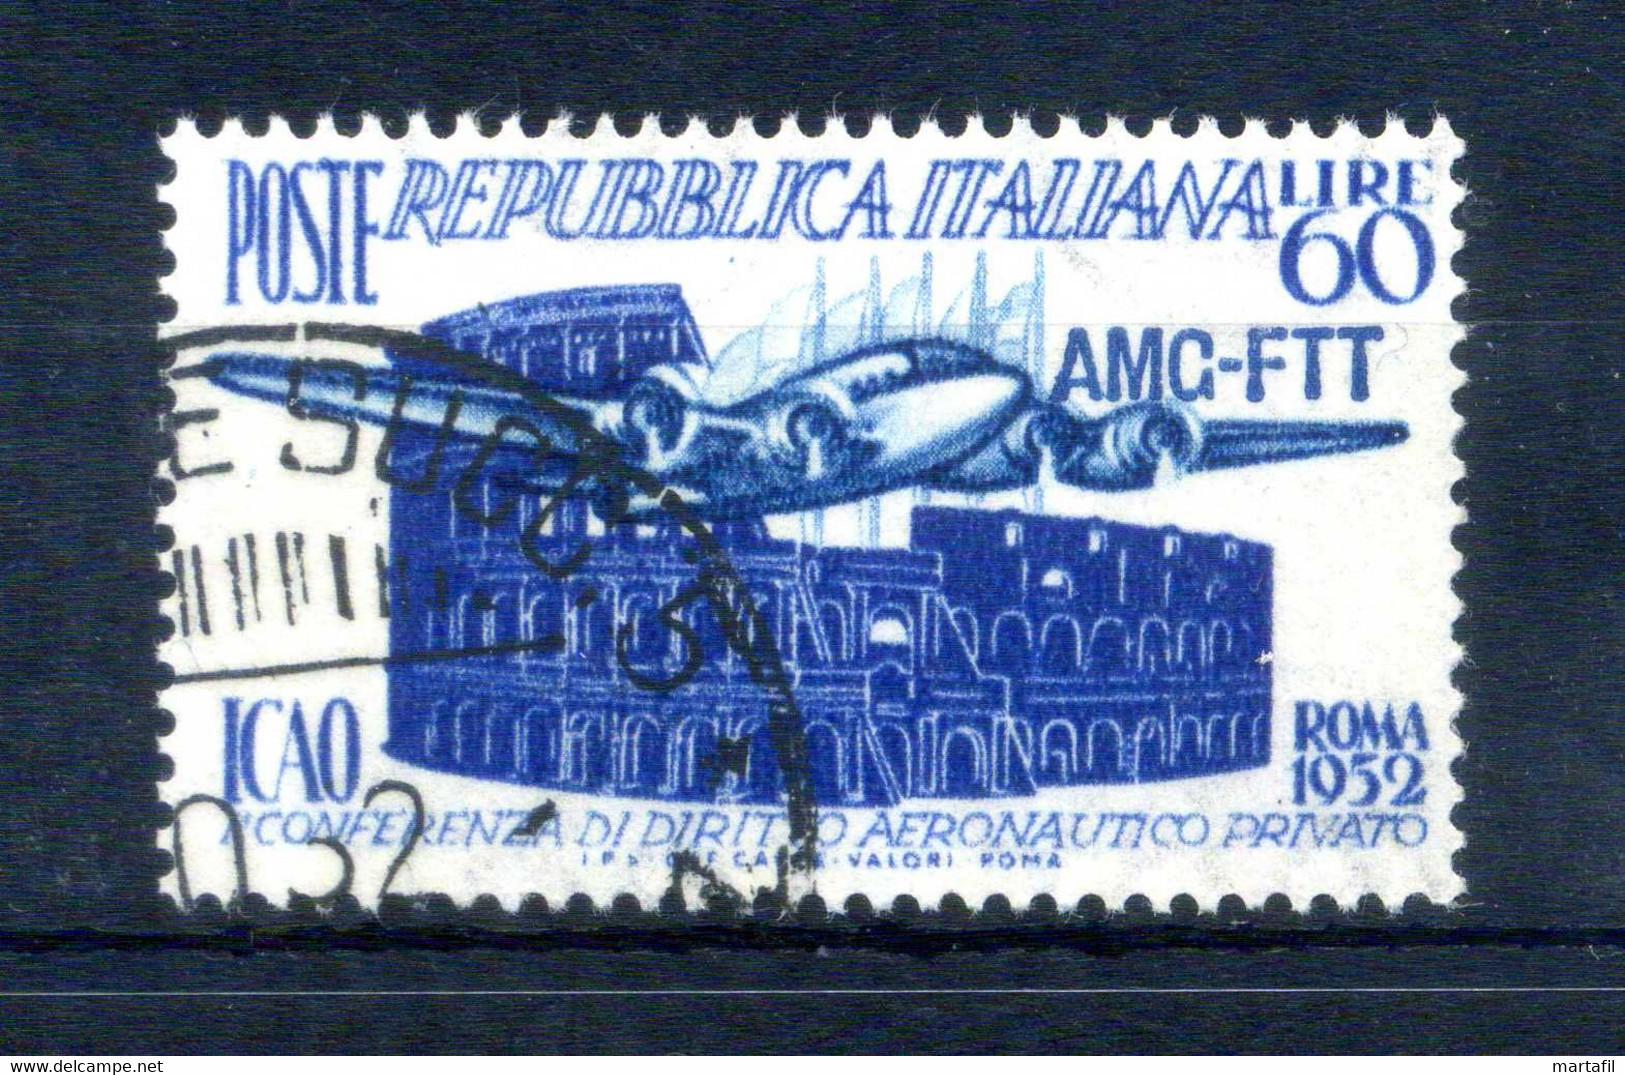 1952 Trieste Zona A S155 Usato, 1° Conferenza Di Diritto Aeronautico Privato ICAO - Used